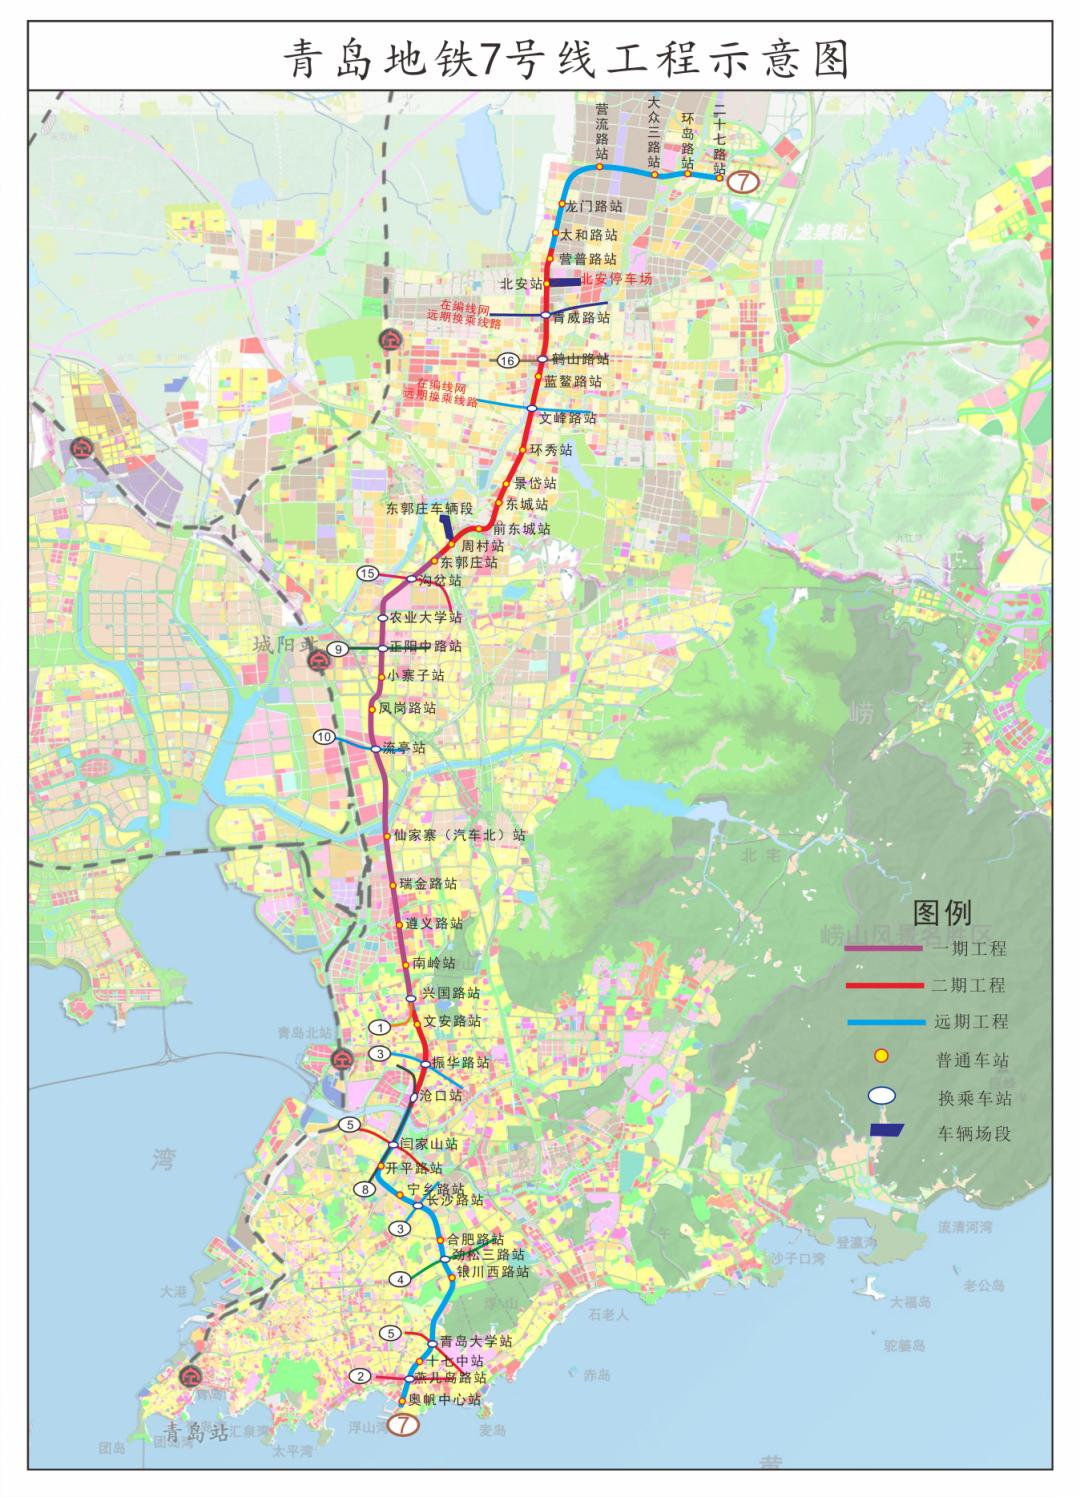 青岛地铁7号线二期首桩开钻即墨步入地铁施工阶段